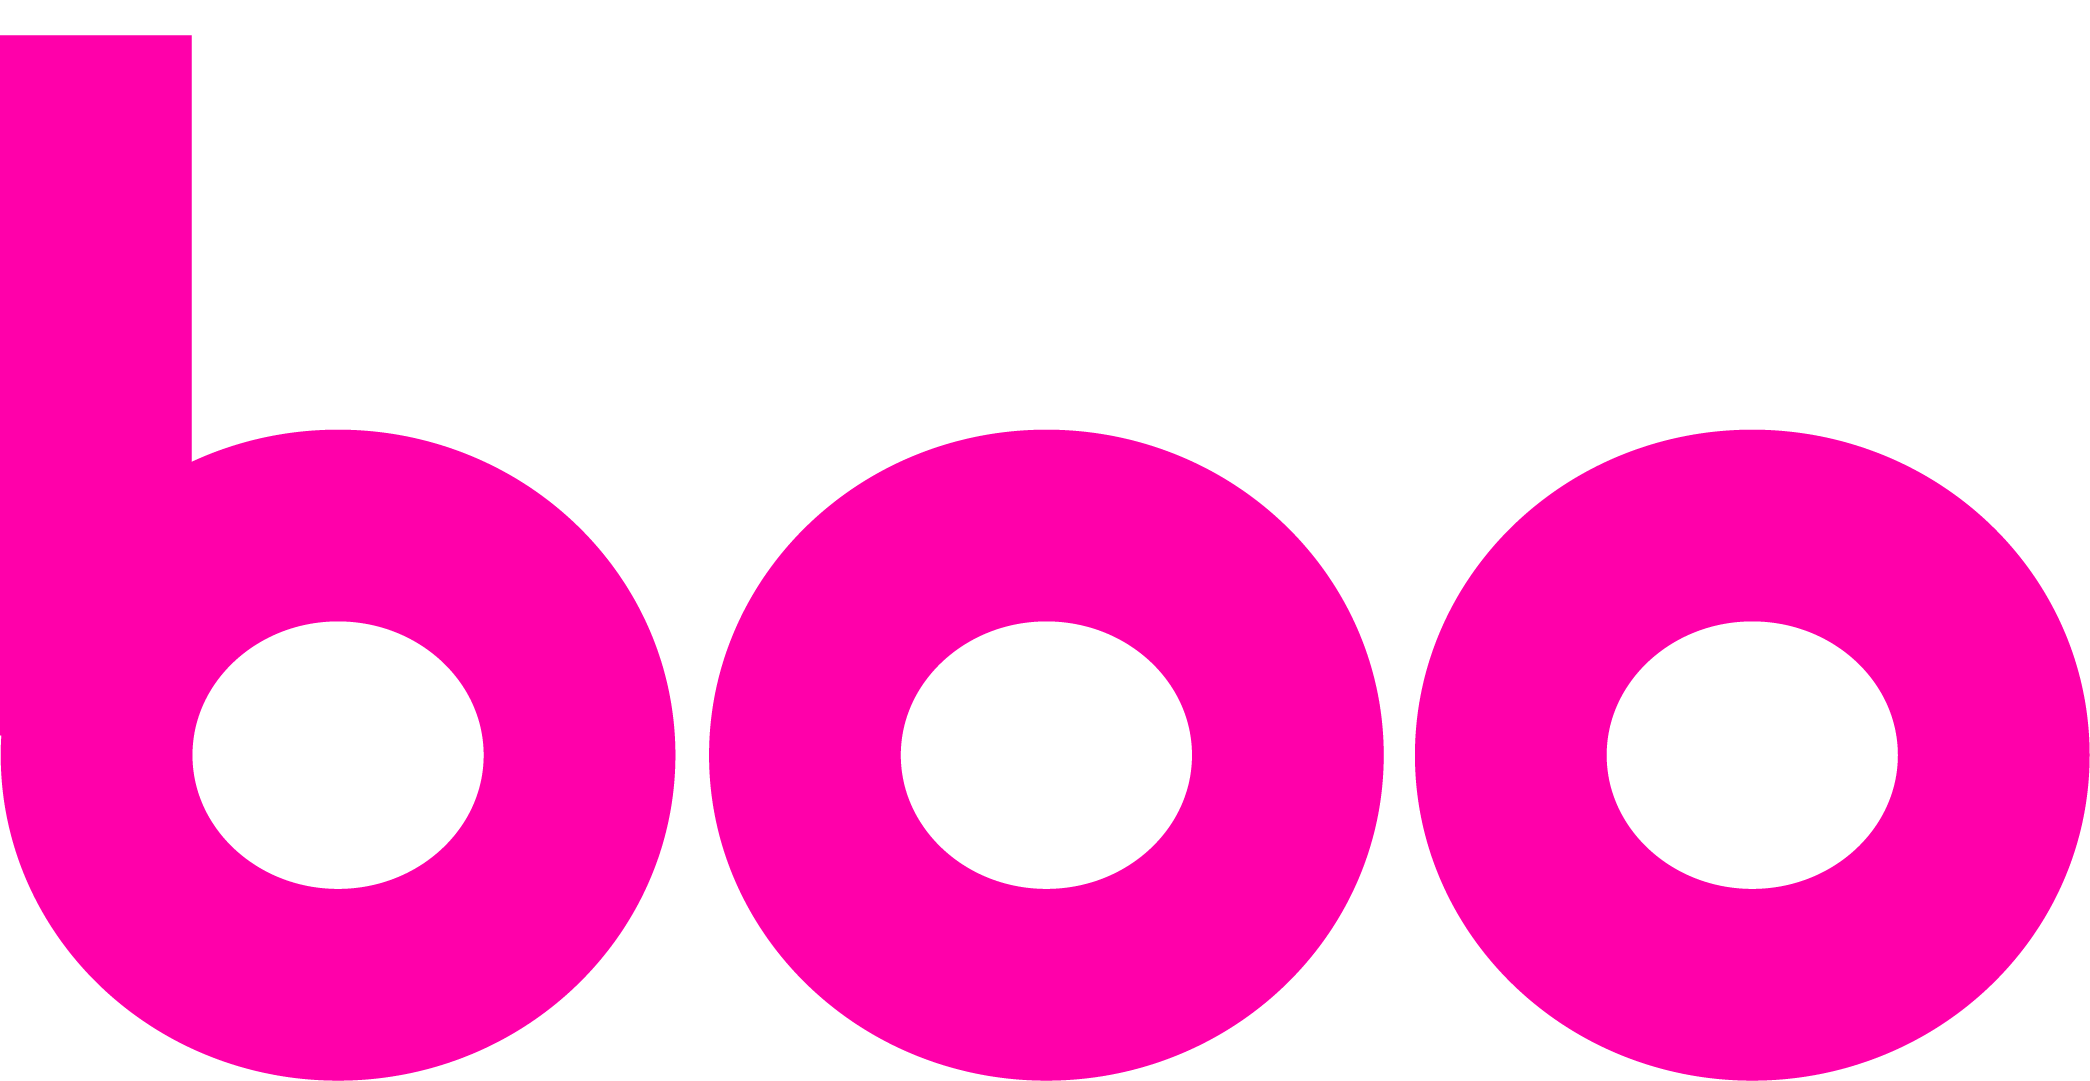 鉄板焼き kitchen boo (キッチンブー) -公式サイト- リーズナブルな鉄板焼き 京成成田駅から800m ロゴ